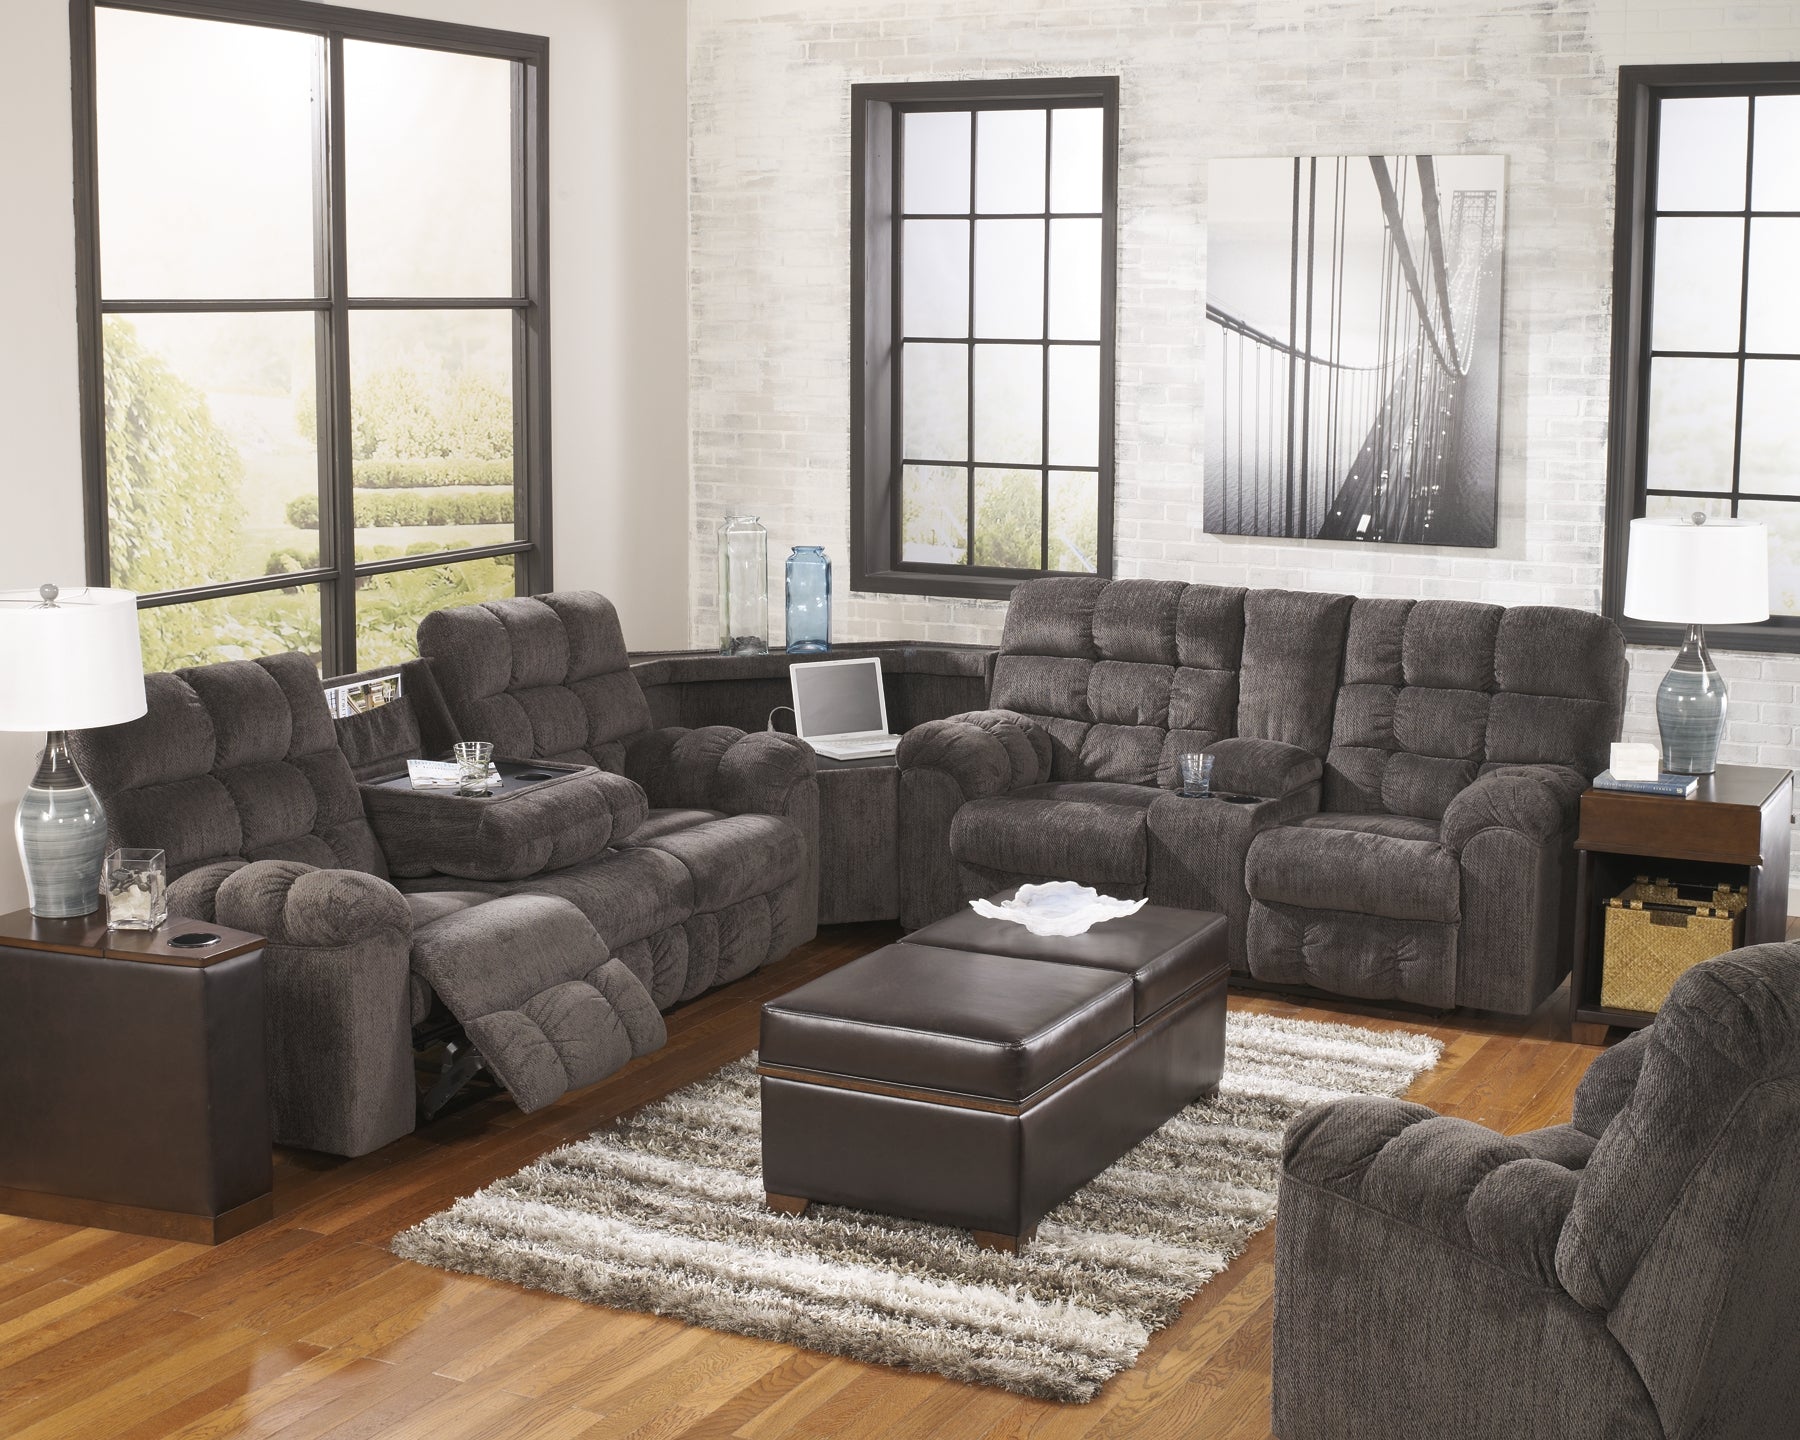 Acieona 3-Piece Reclining Sectional JB's Furniture  Home Furniture, Home Decor, Furniture Store